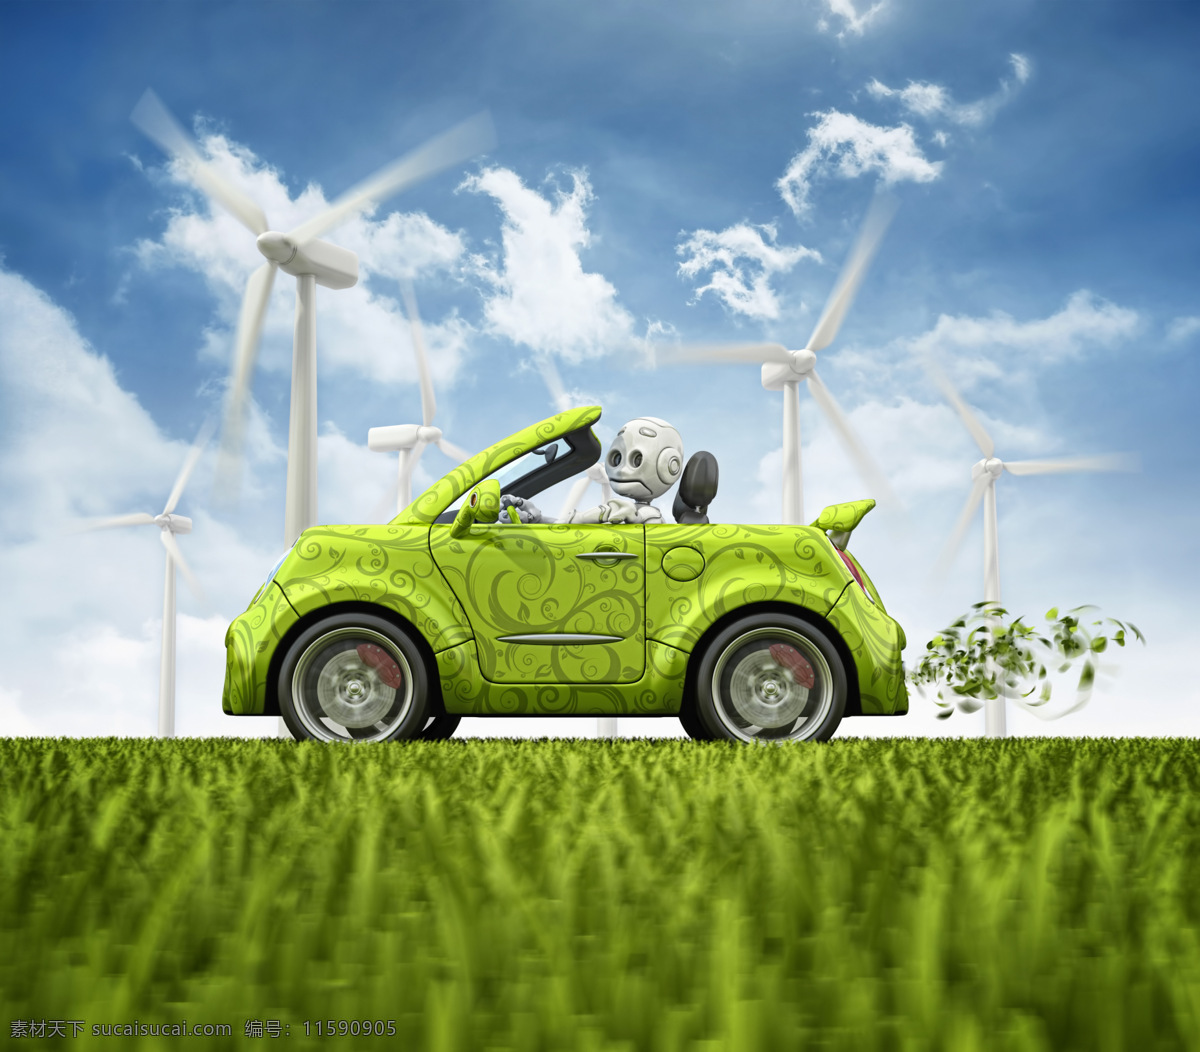 创意 创意环保 风车 风力 环保 蓝天白云 汽车 设计素材 模板下载 天然景色 自然风光 风力发电车 自然风景 自然景观